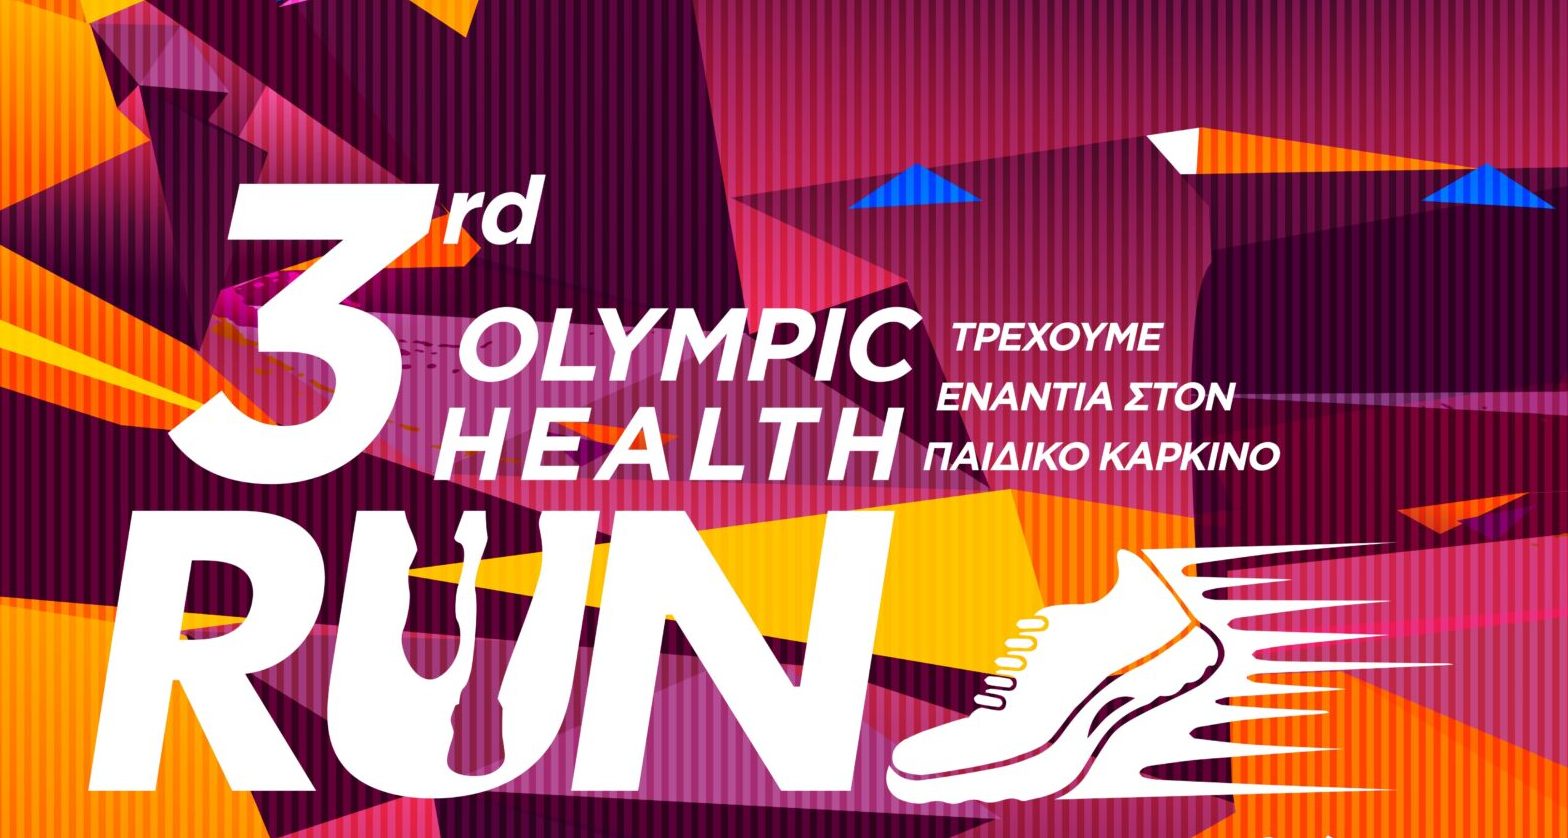 «3rd Olympic Health Run»: Στις 23 Σεπτεμβρίου στο ΟΑΚΑ τρέχουμε ενάντια στον Παιδικό Καρκίνο